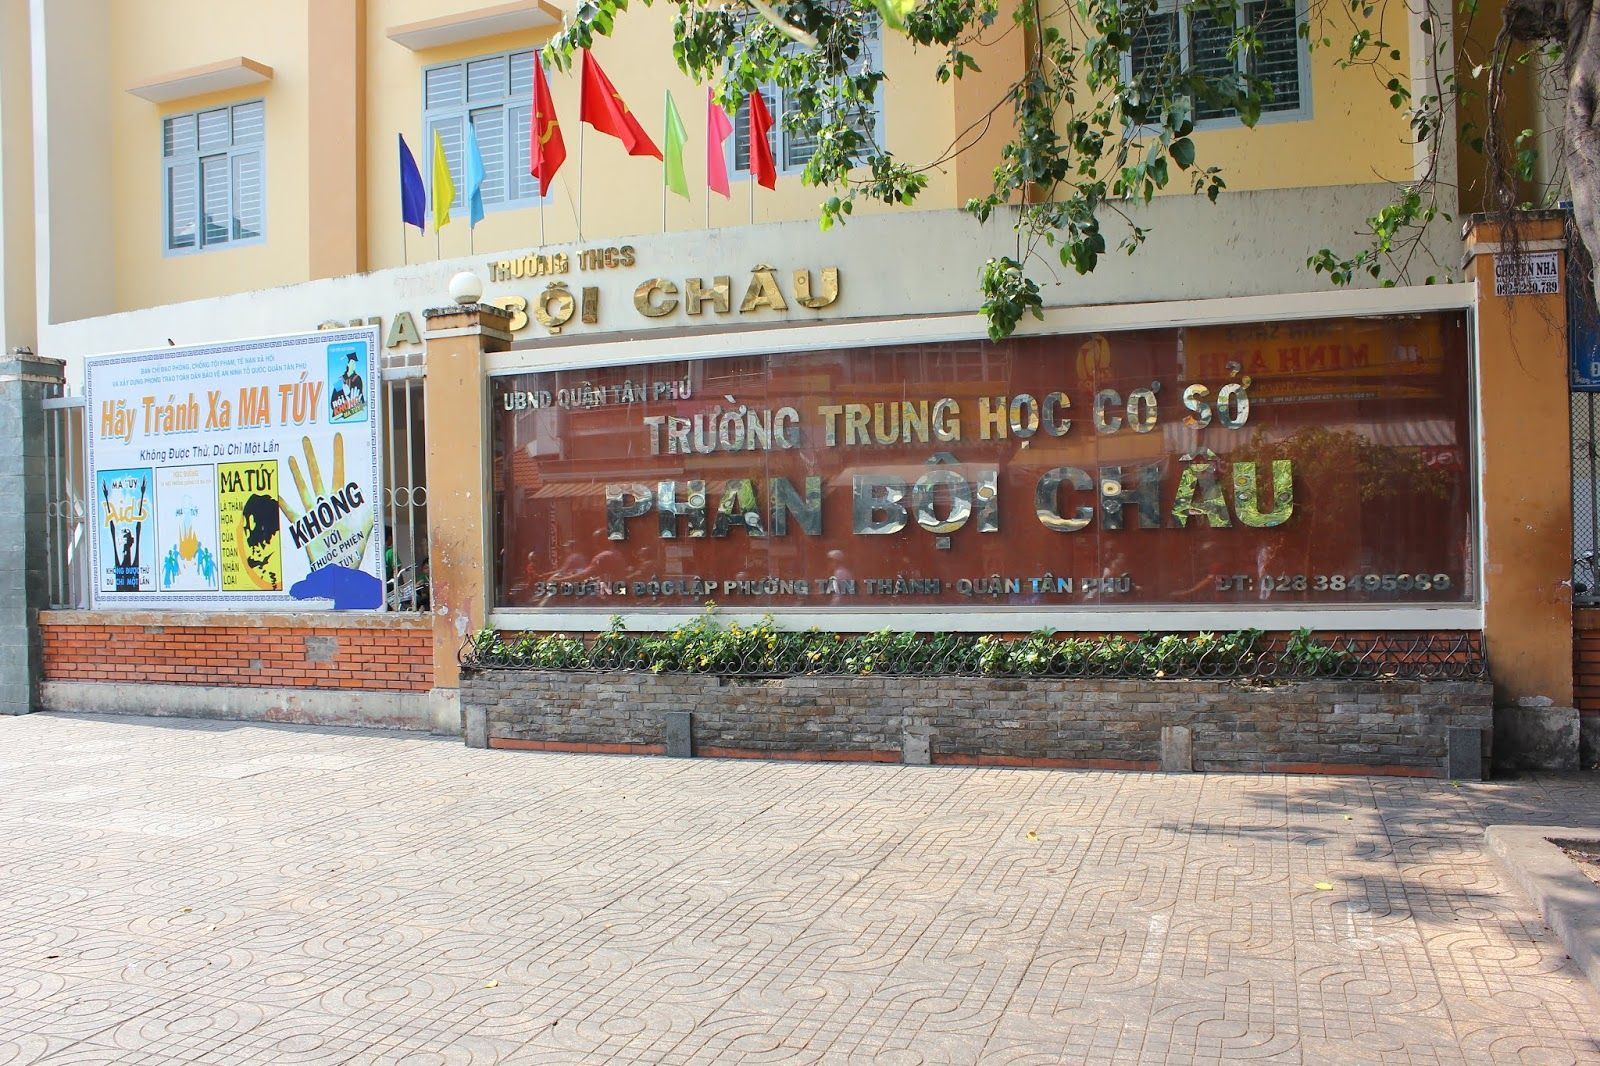 Điểm danh top 3 trường trung học cơ sở tốt nhất gần chung cư Oriental Plaza, quận Tân Phú